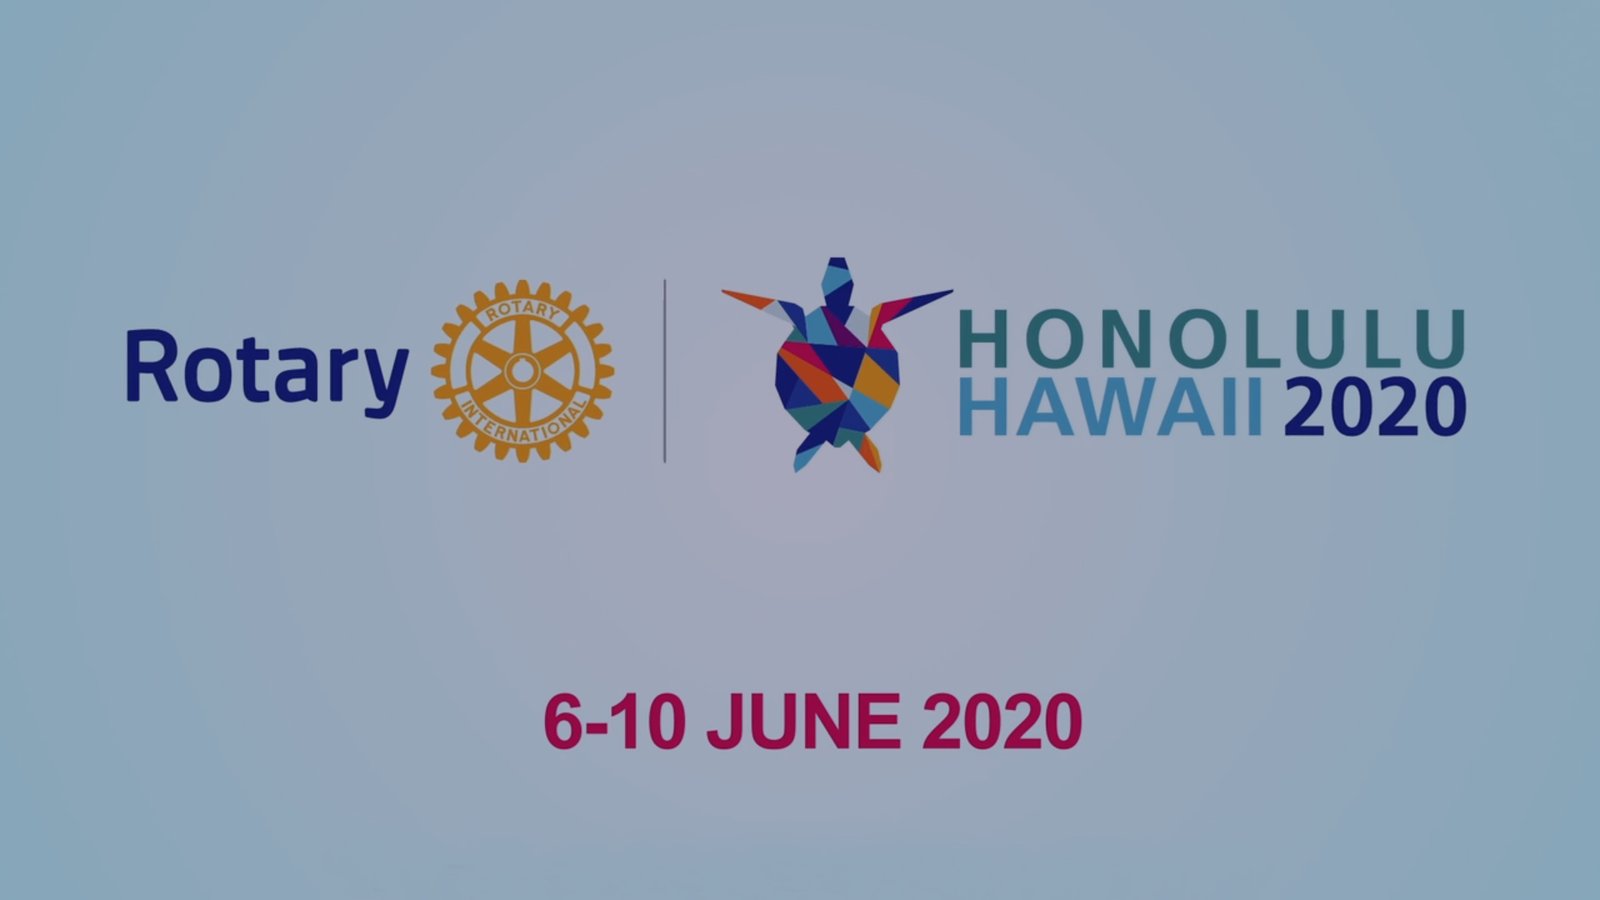 Afetur - Rotary 2020 - Convenção de Honolulu - Hamburgo 2019